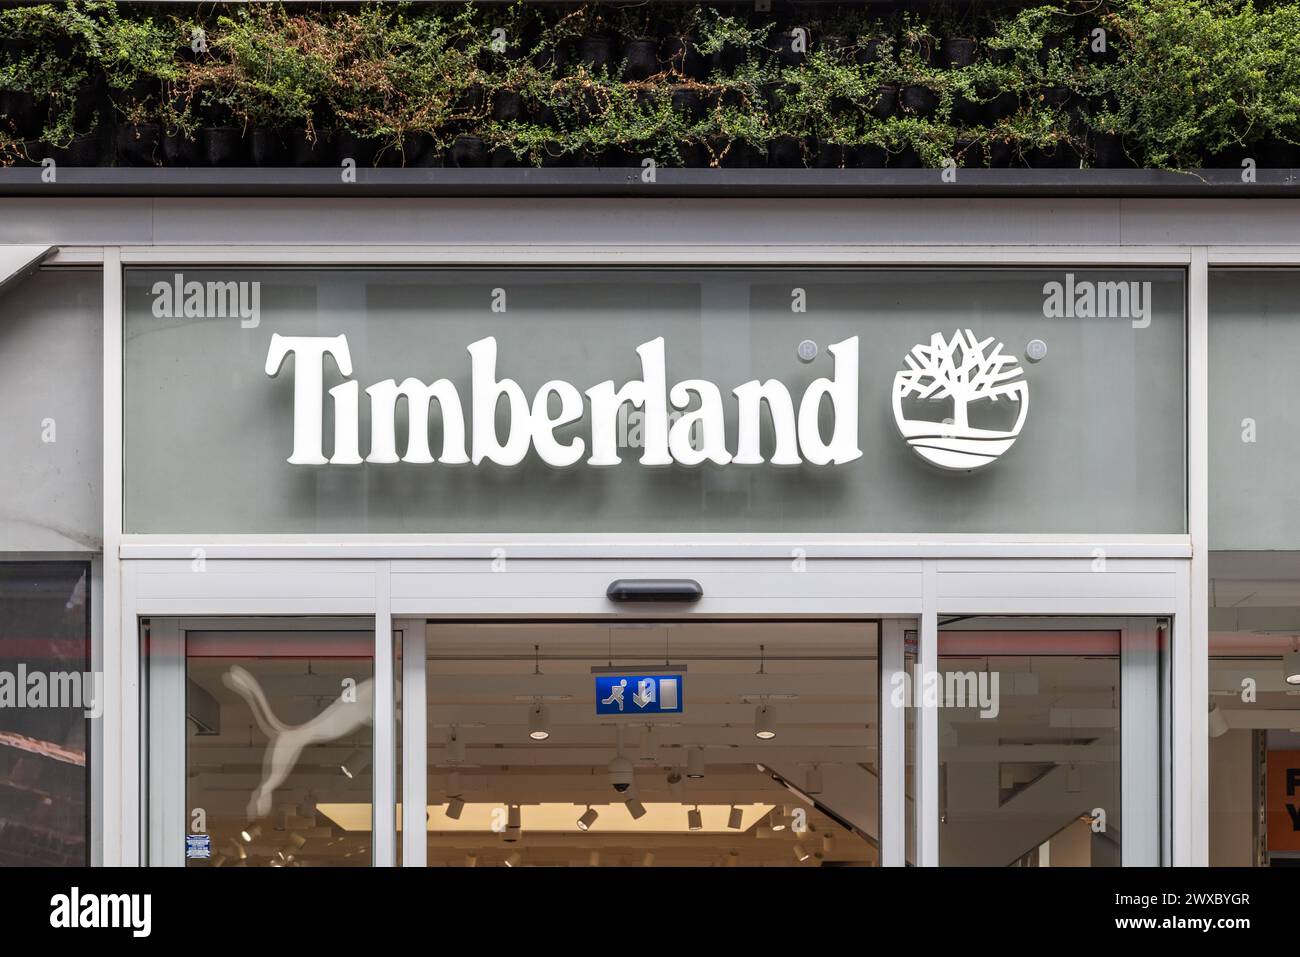 Dettaglio della segnaletica del marchio e del logo di un negozio Timberland. Dettaglio di un cartello Timberland Shop. Foto Stock